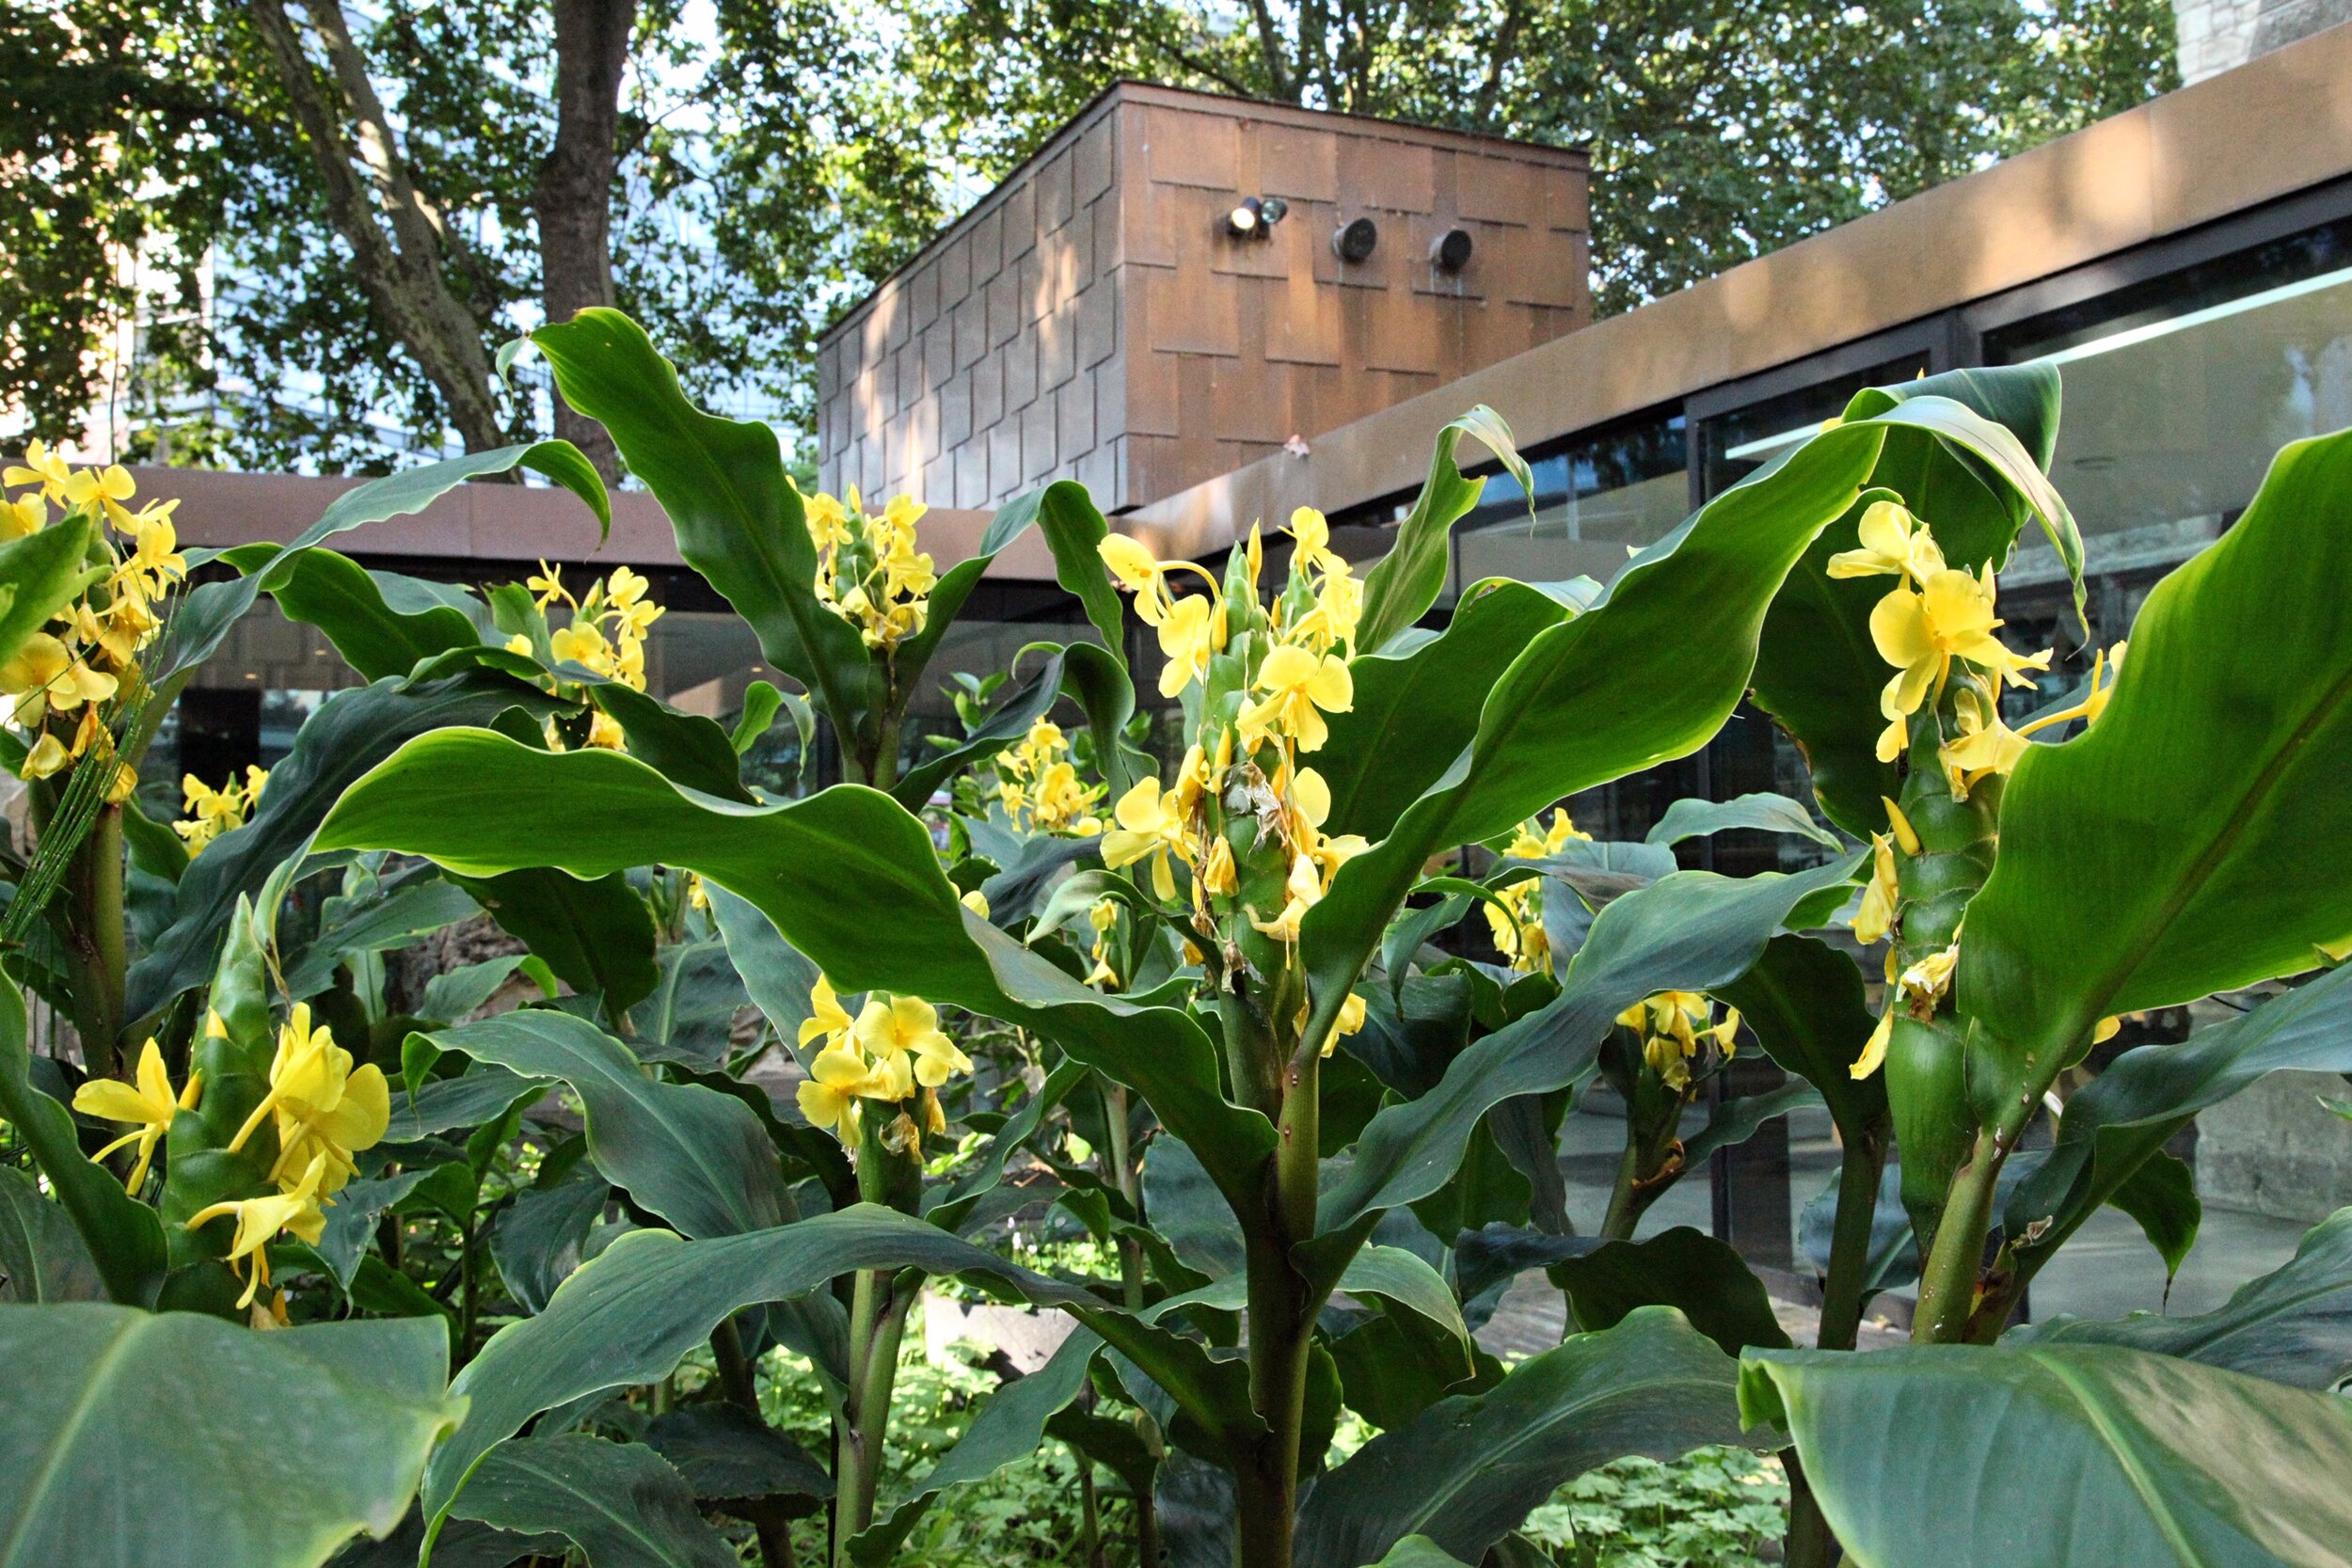 Matt Collins - Garden Museum ginger lilies.jpg